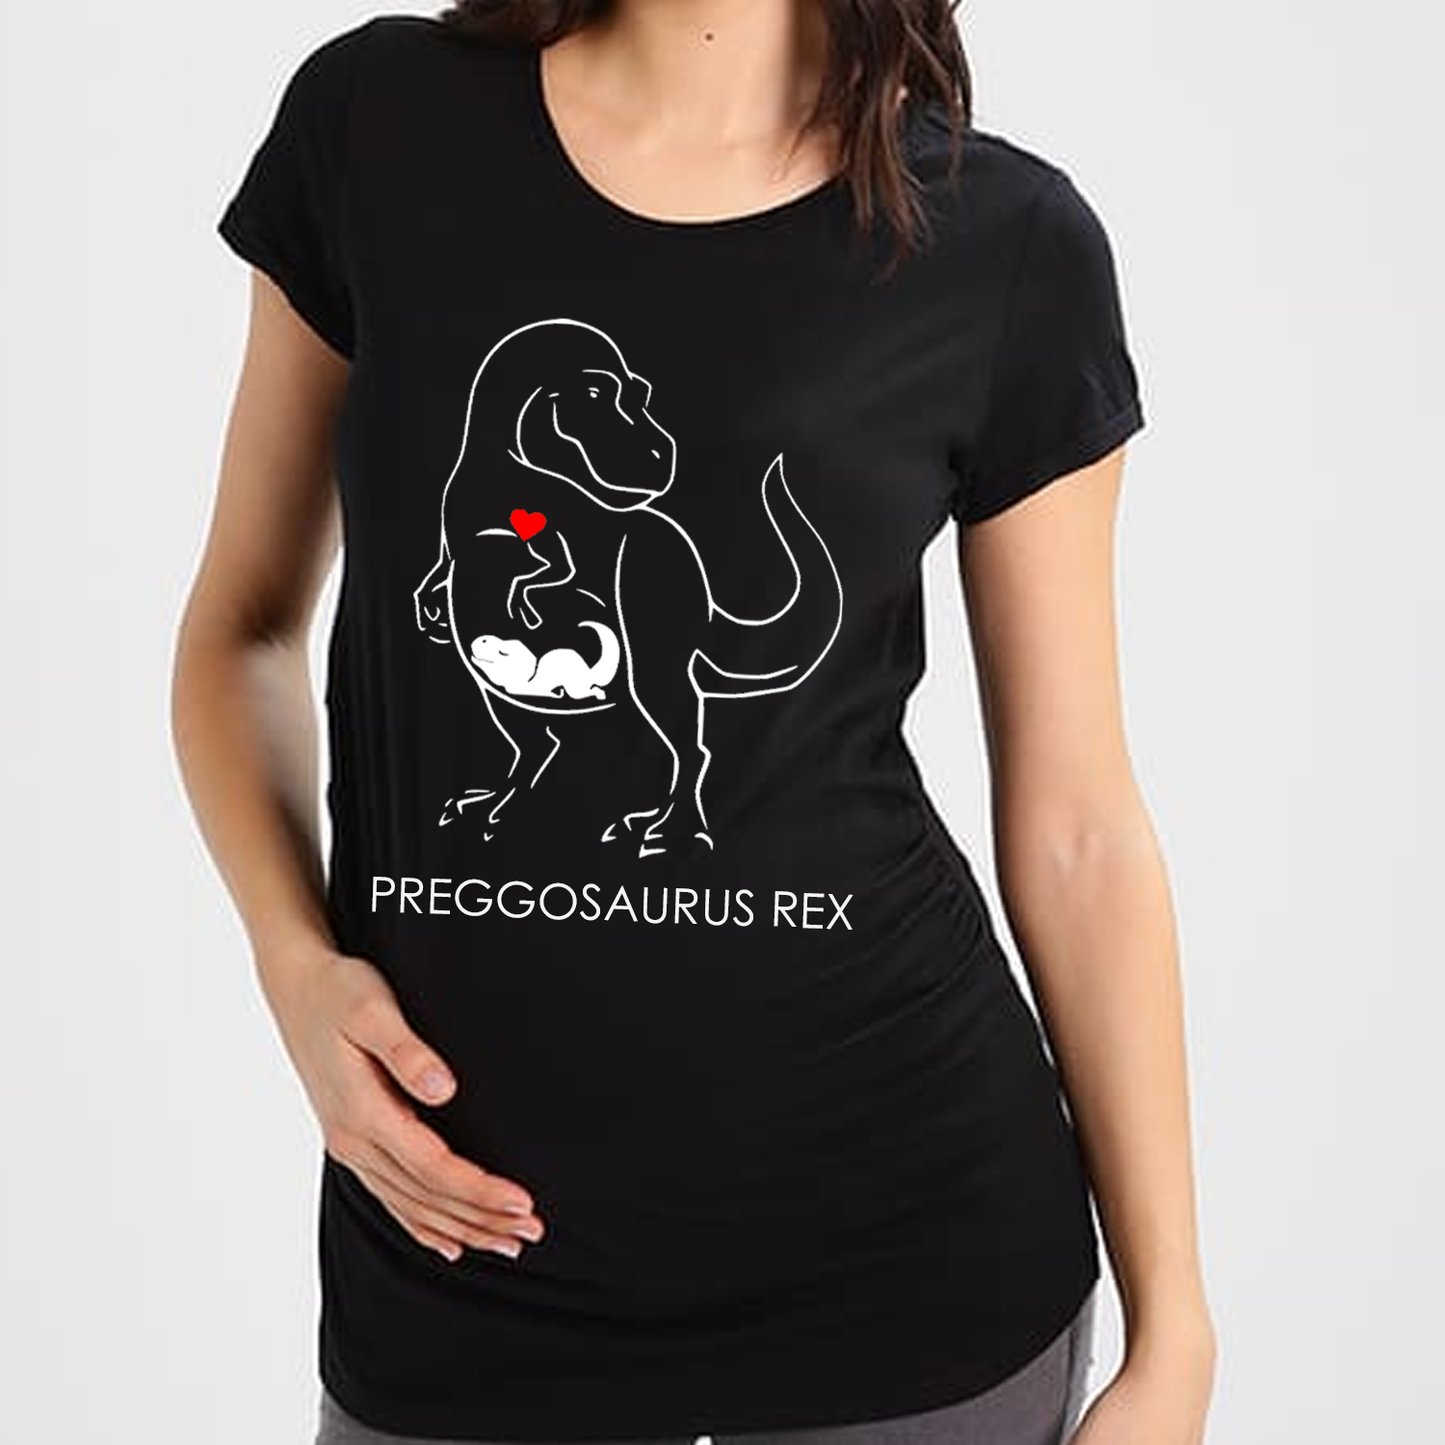 Preggosaurus Rex - Maternity t-shirt